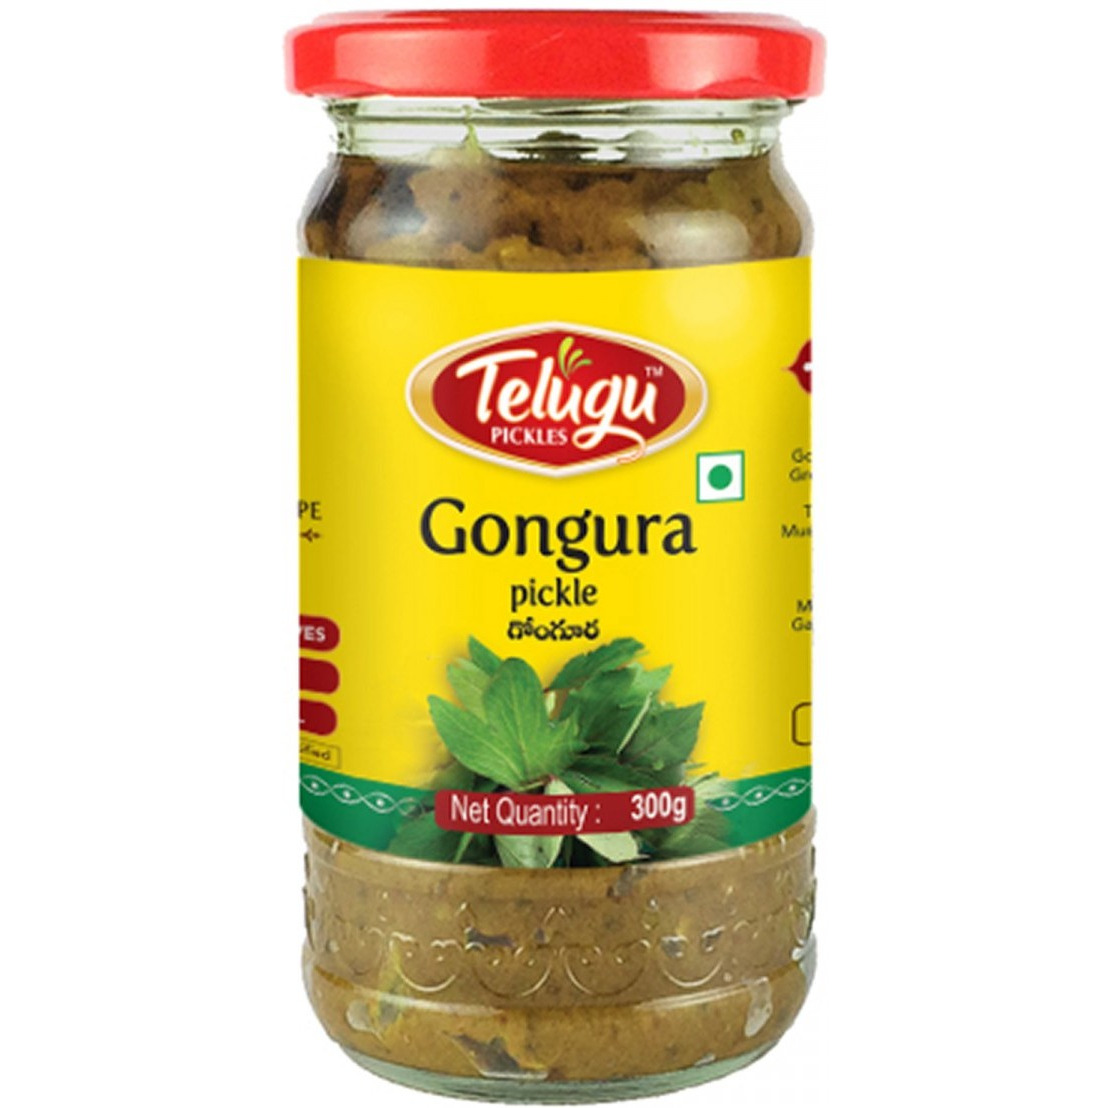 Telugu Gongura Pickle Without Garlic - 300 Gm (10.58Oz)